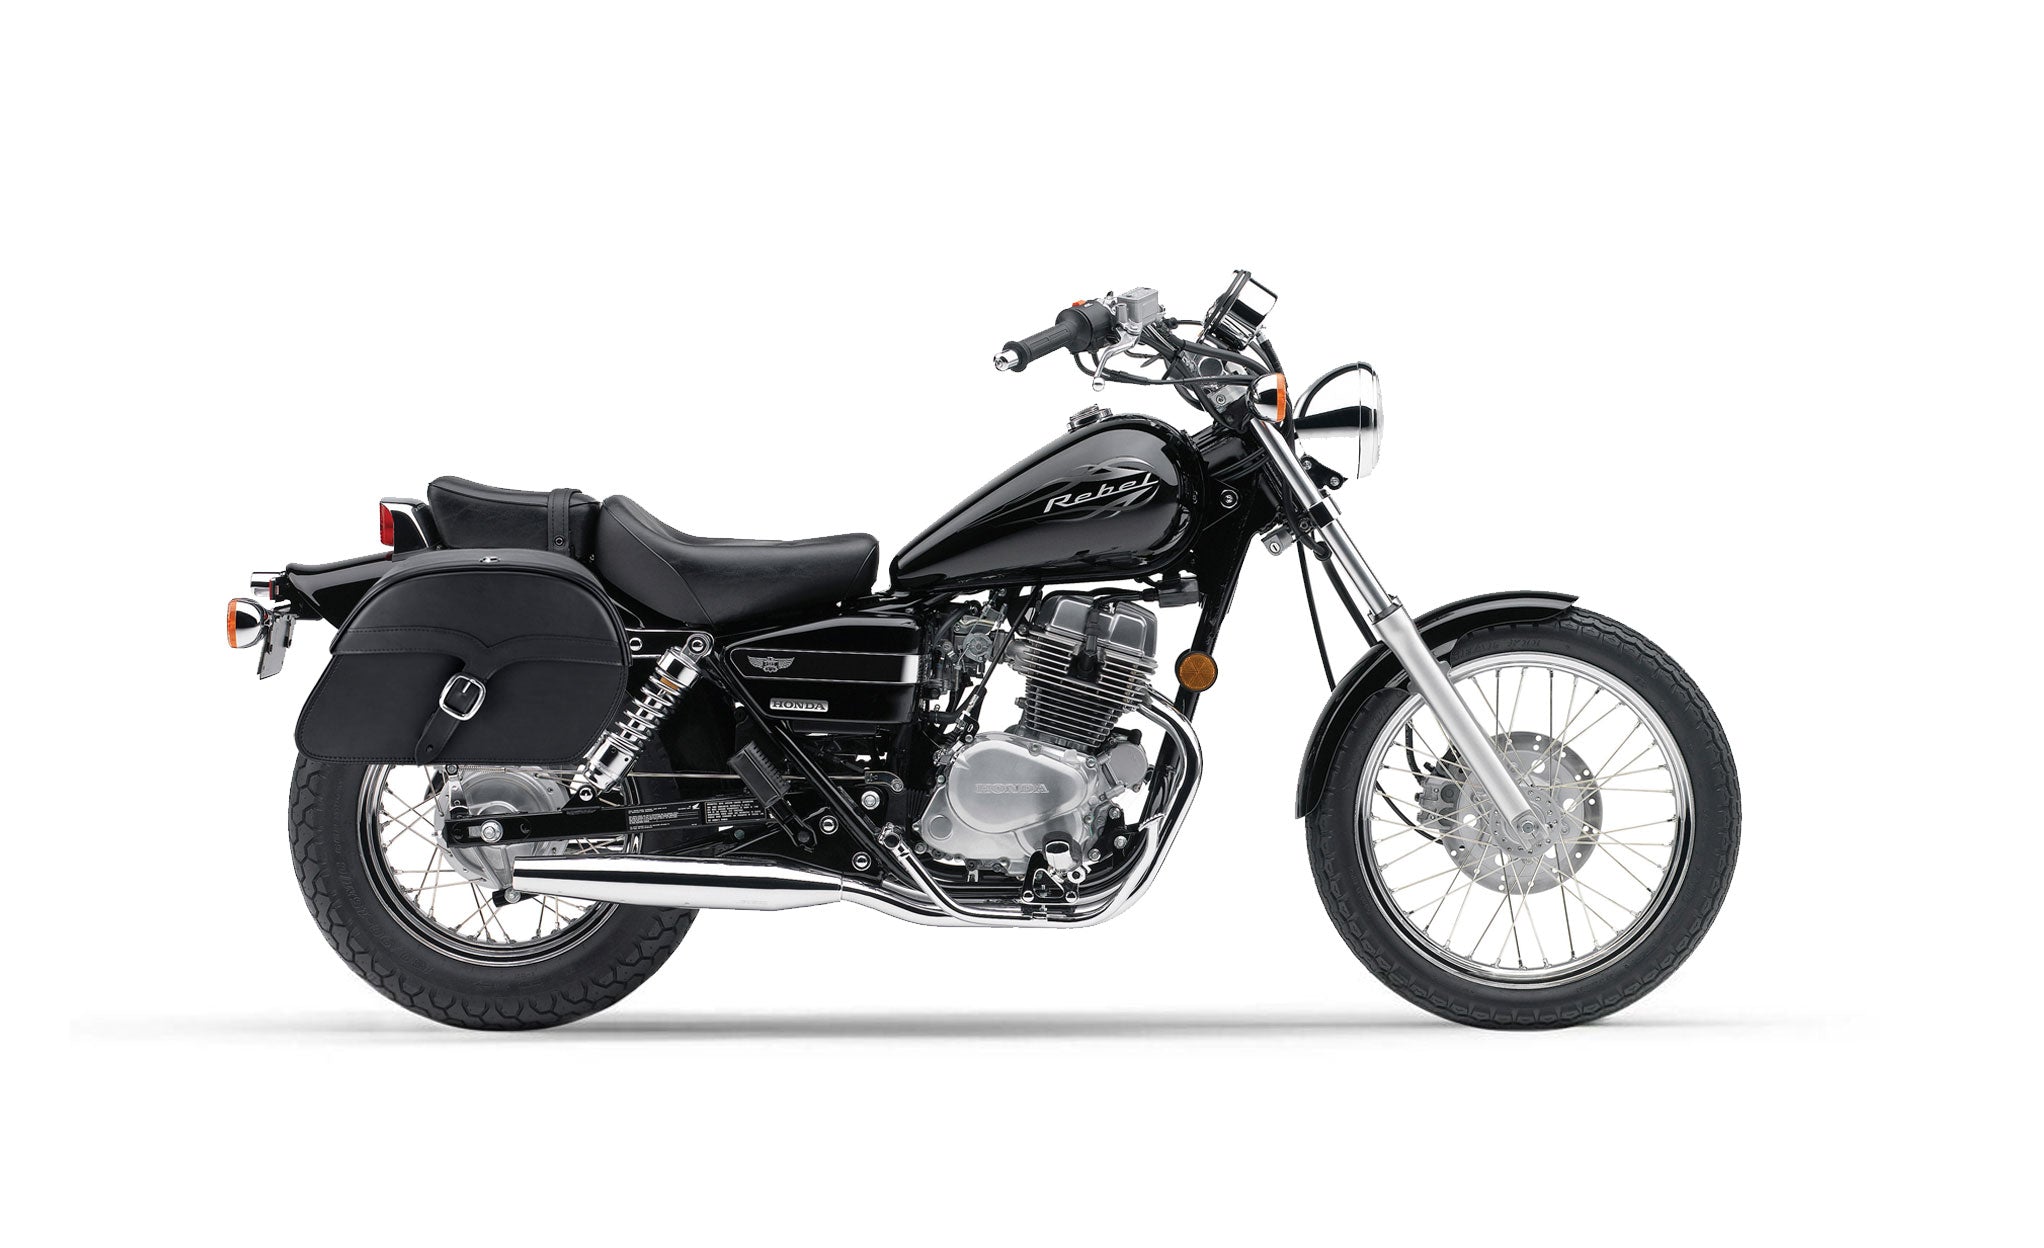 Viking Vintage Medium Honda Rebel 250 Leather Motorcycle Saddlebags on Bike Photo @expand